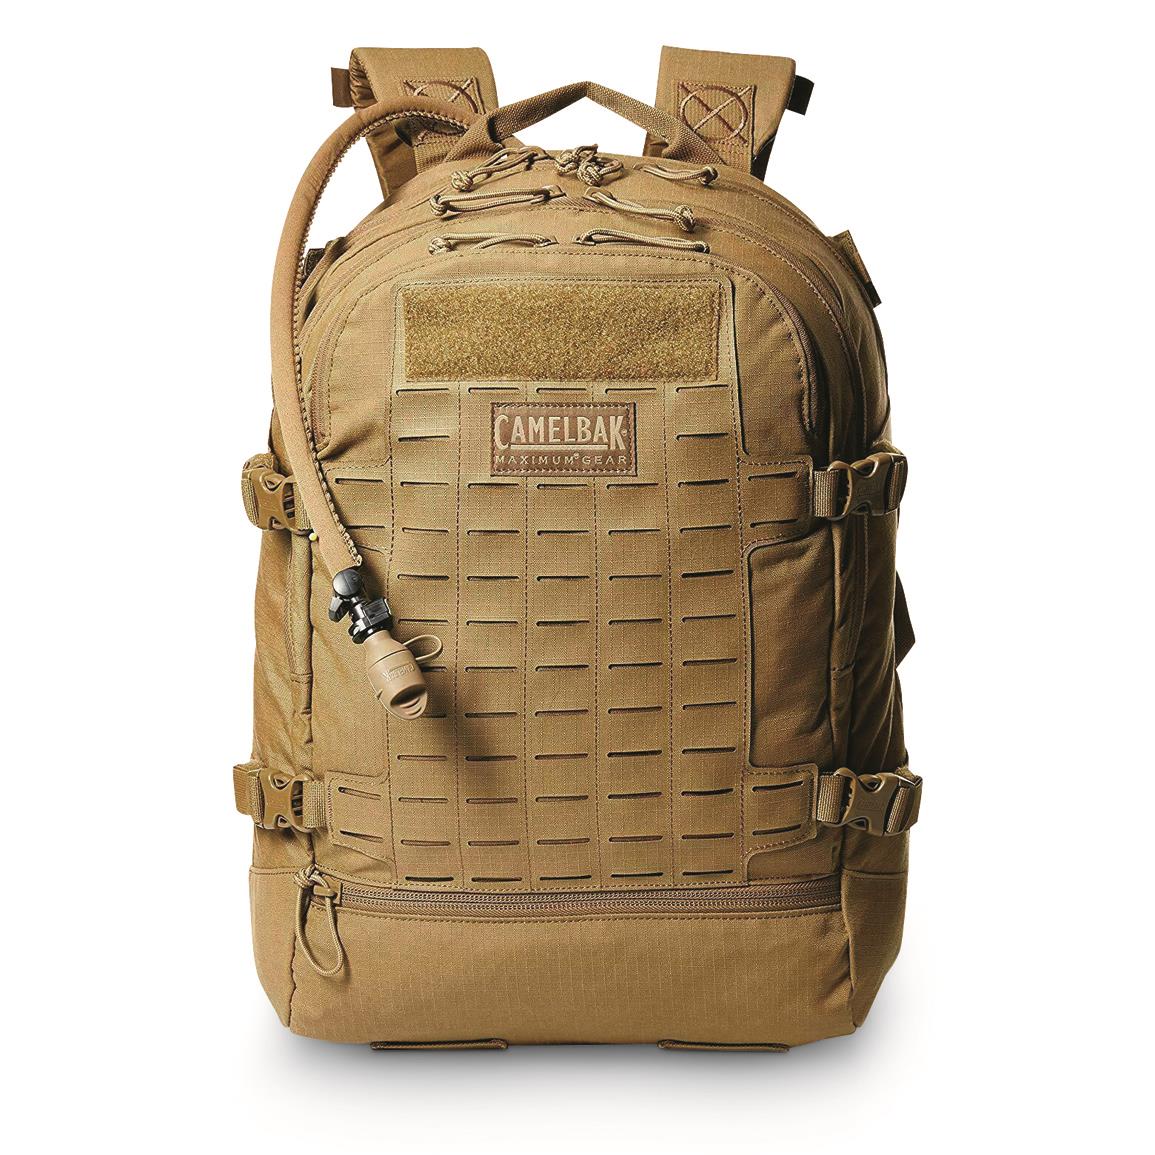 CamelBak Skirmish Hydration Backpack, 100 oz. - 711412, Rucksacks & Backpacks at Sportsman's Guide